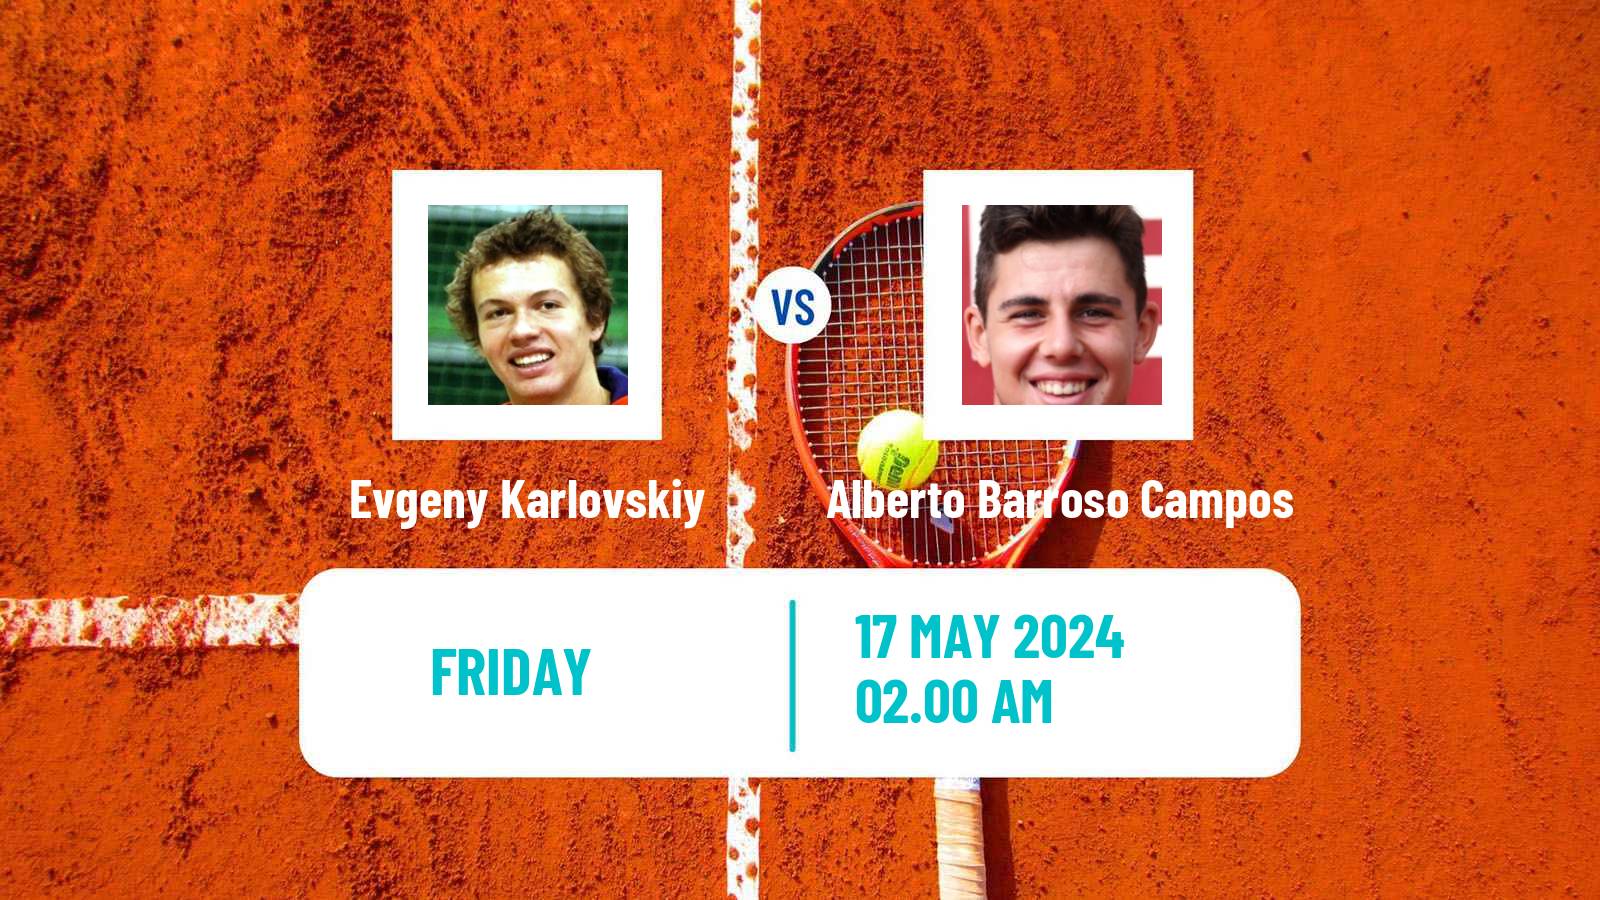 Tennis ITF M25 Kachreti Men Evgeny Karlovskiy - Alberto Barroso Campos